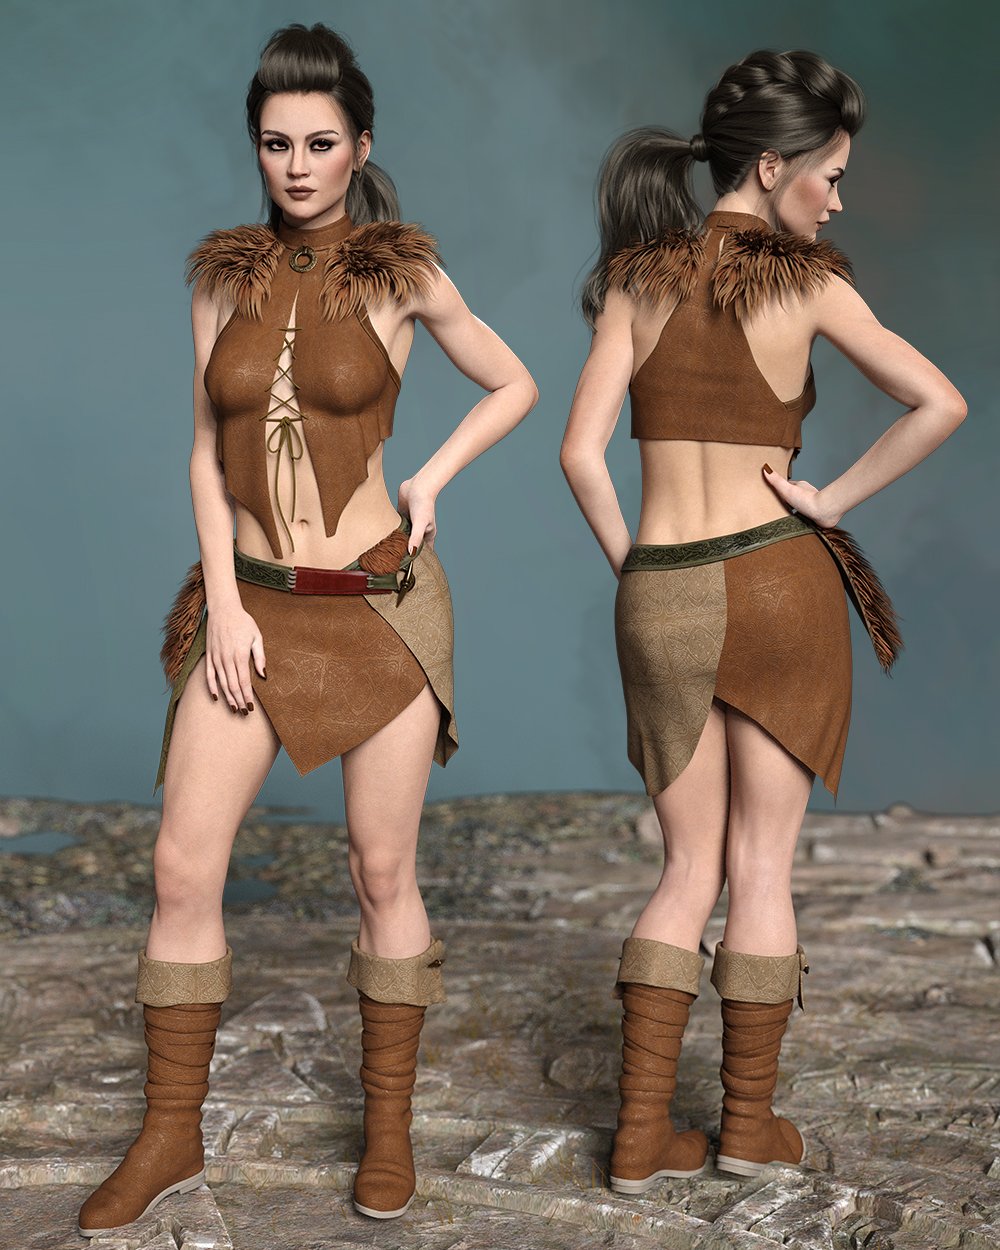 Runa for Genesis 8 Female by: TwiztedMetal, 3D Models by Daz 3D